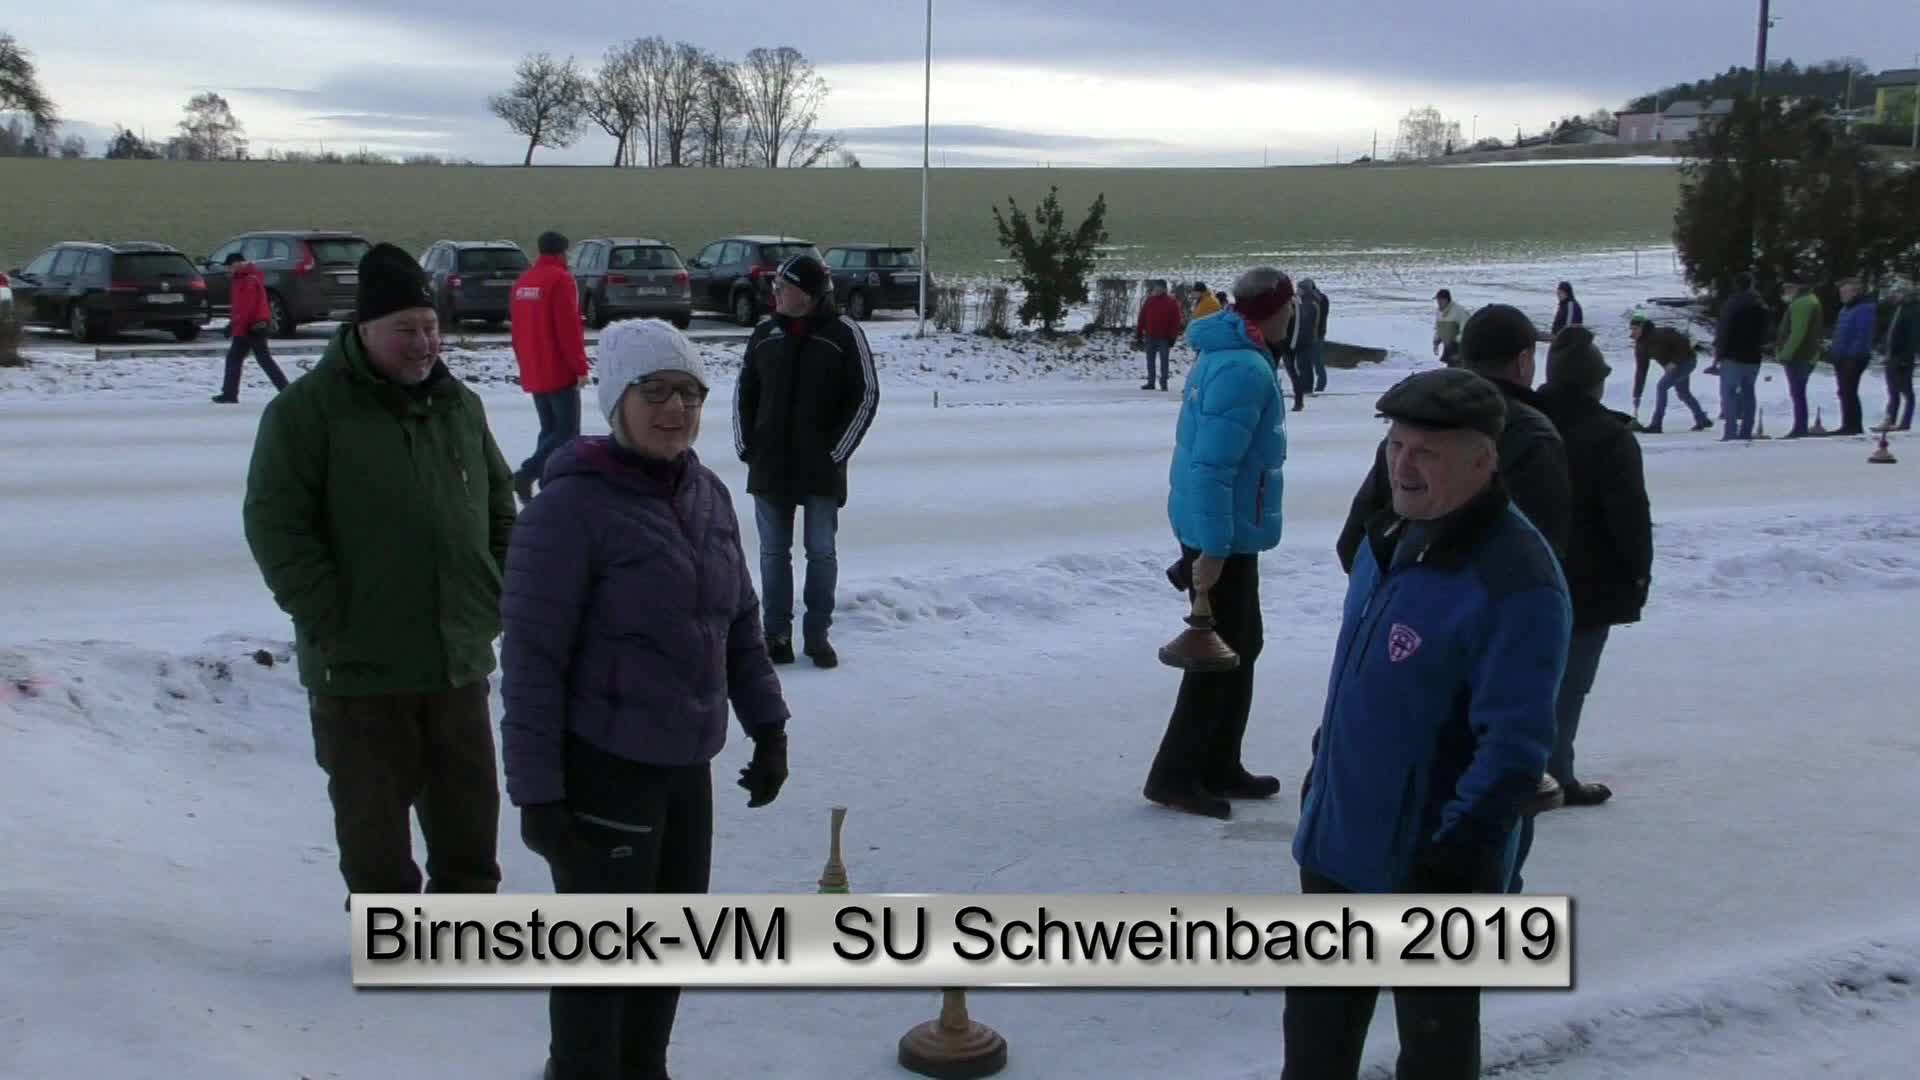 Birnstock – VM Sportunion Schweinbach 2019